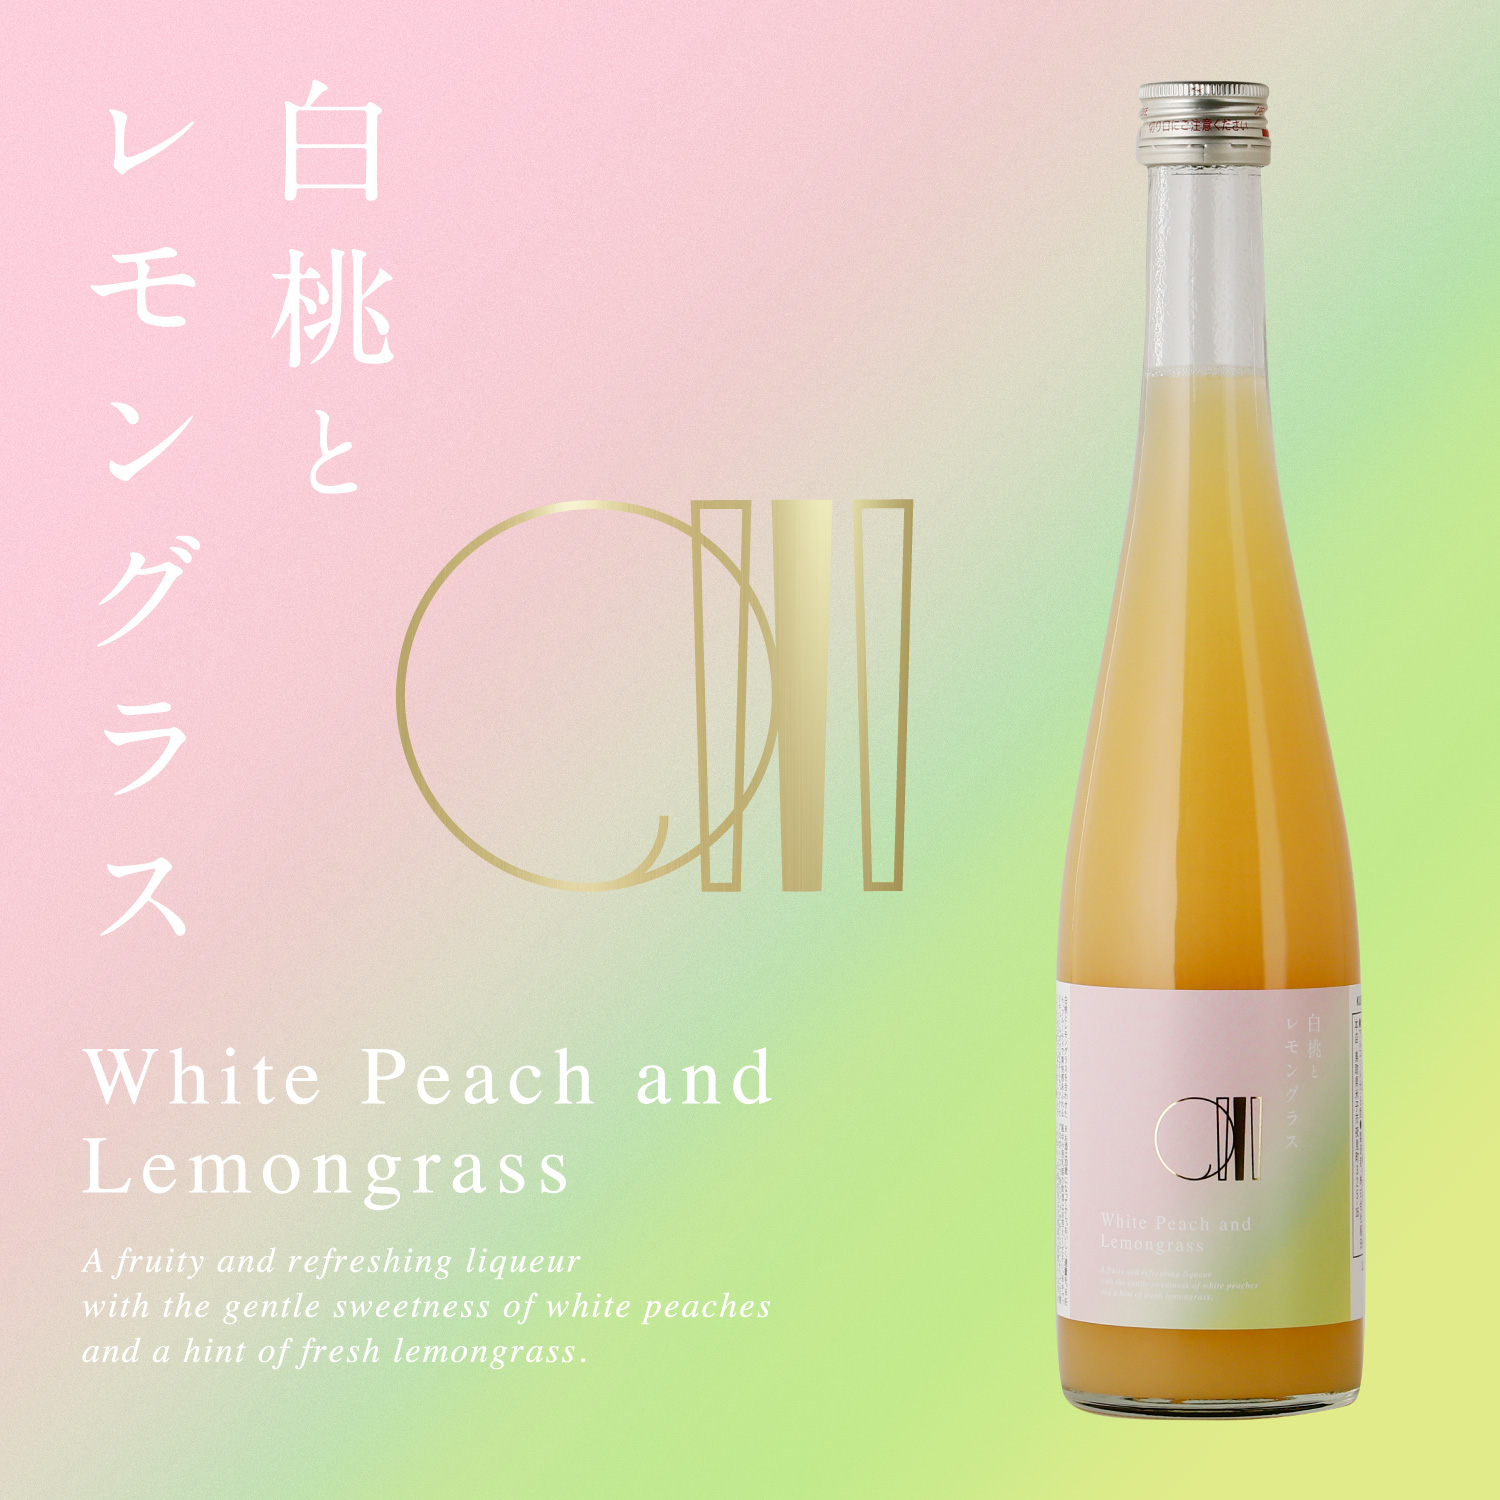 爽やかなレモングラスが白桃の甘さを引き立てる果実酒「白桃とレモングラス」が登場